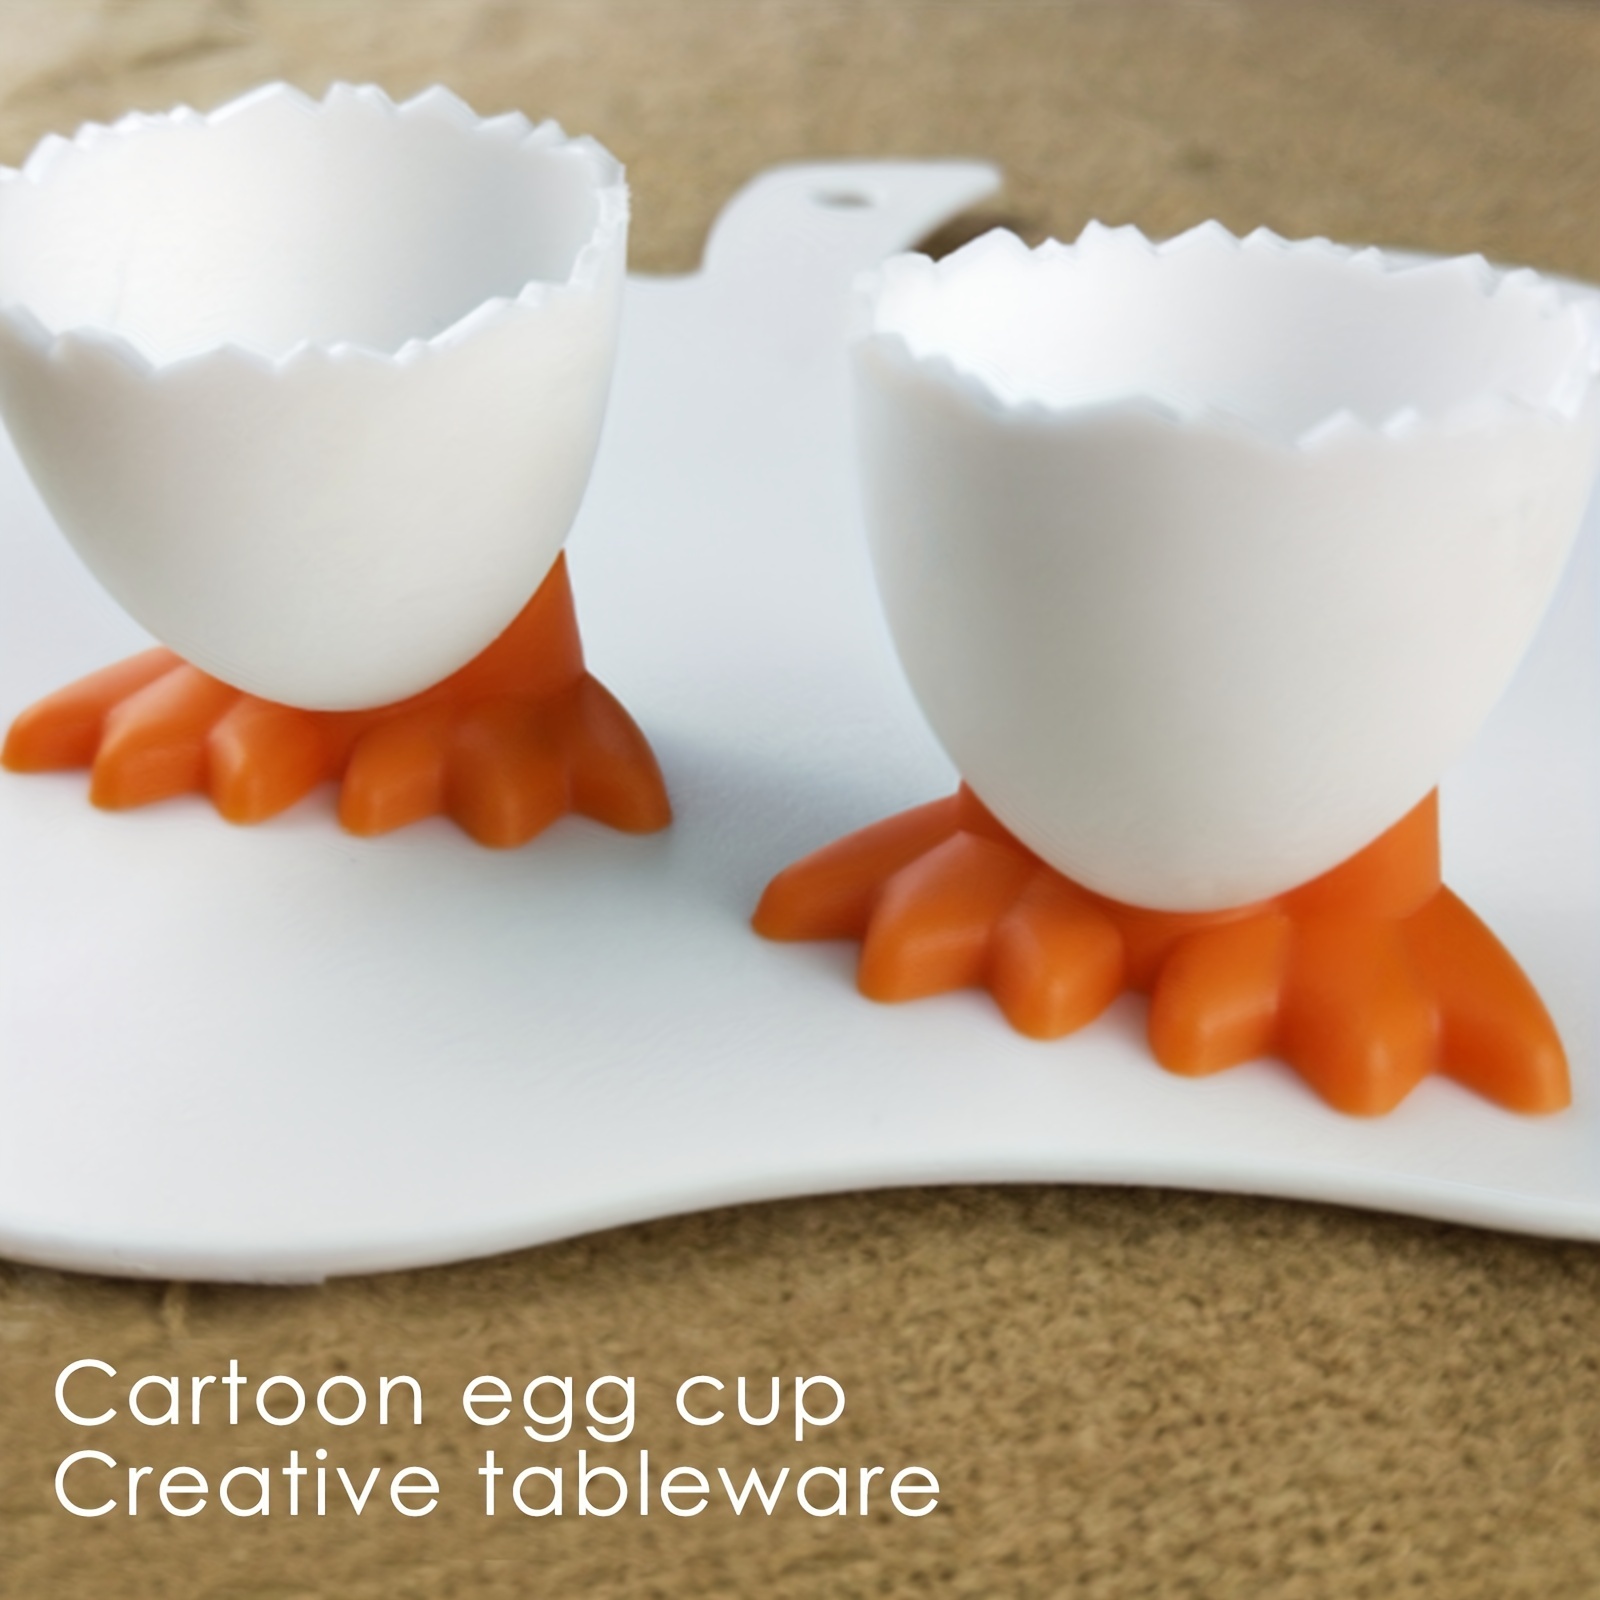 WD - 2 hueveras de cerámica con forma de pájaro para huevos cocidos suaves  (soporte para huevos) – para desayuno, brunch y soporte para huevos  hervidos, utensilios de cocina, decoración del hogar